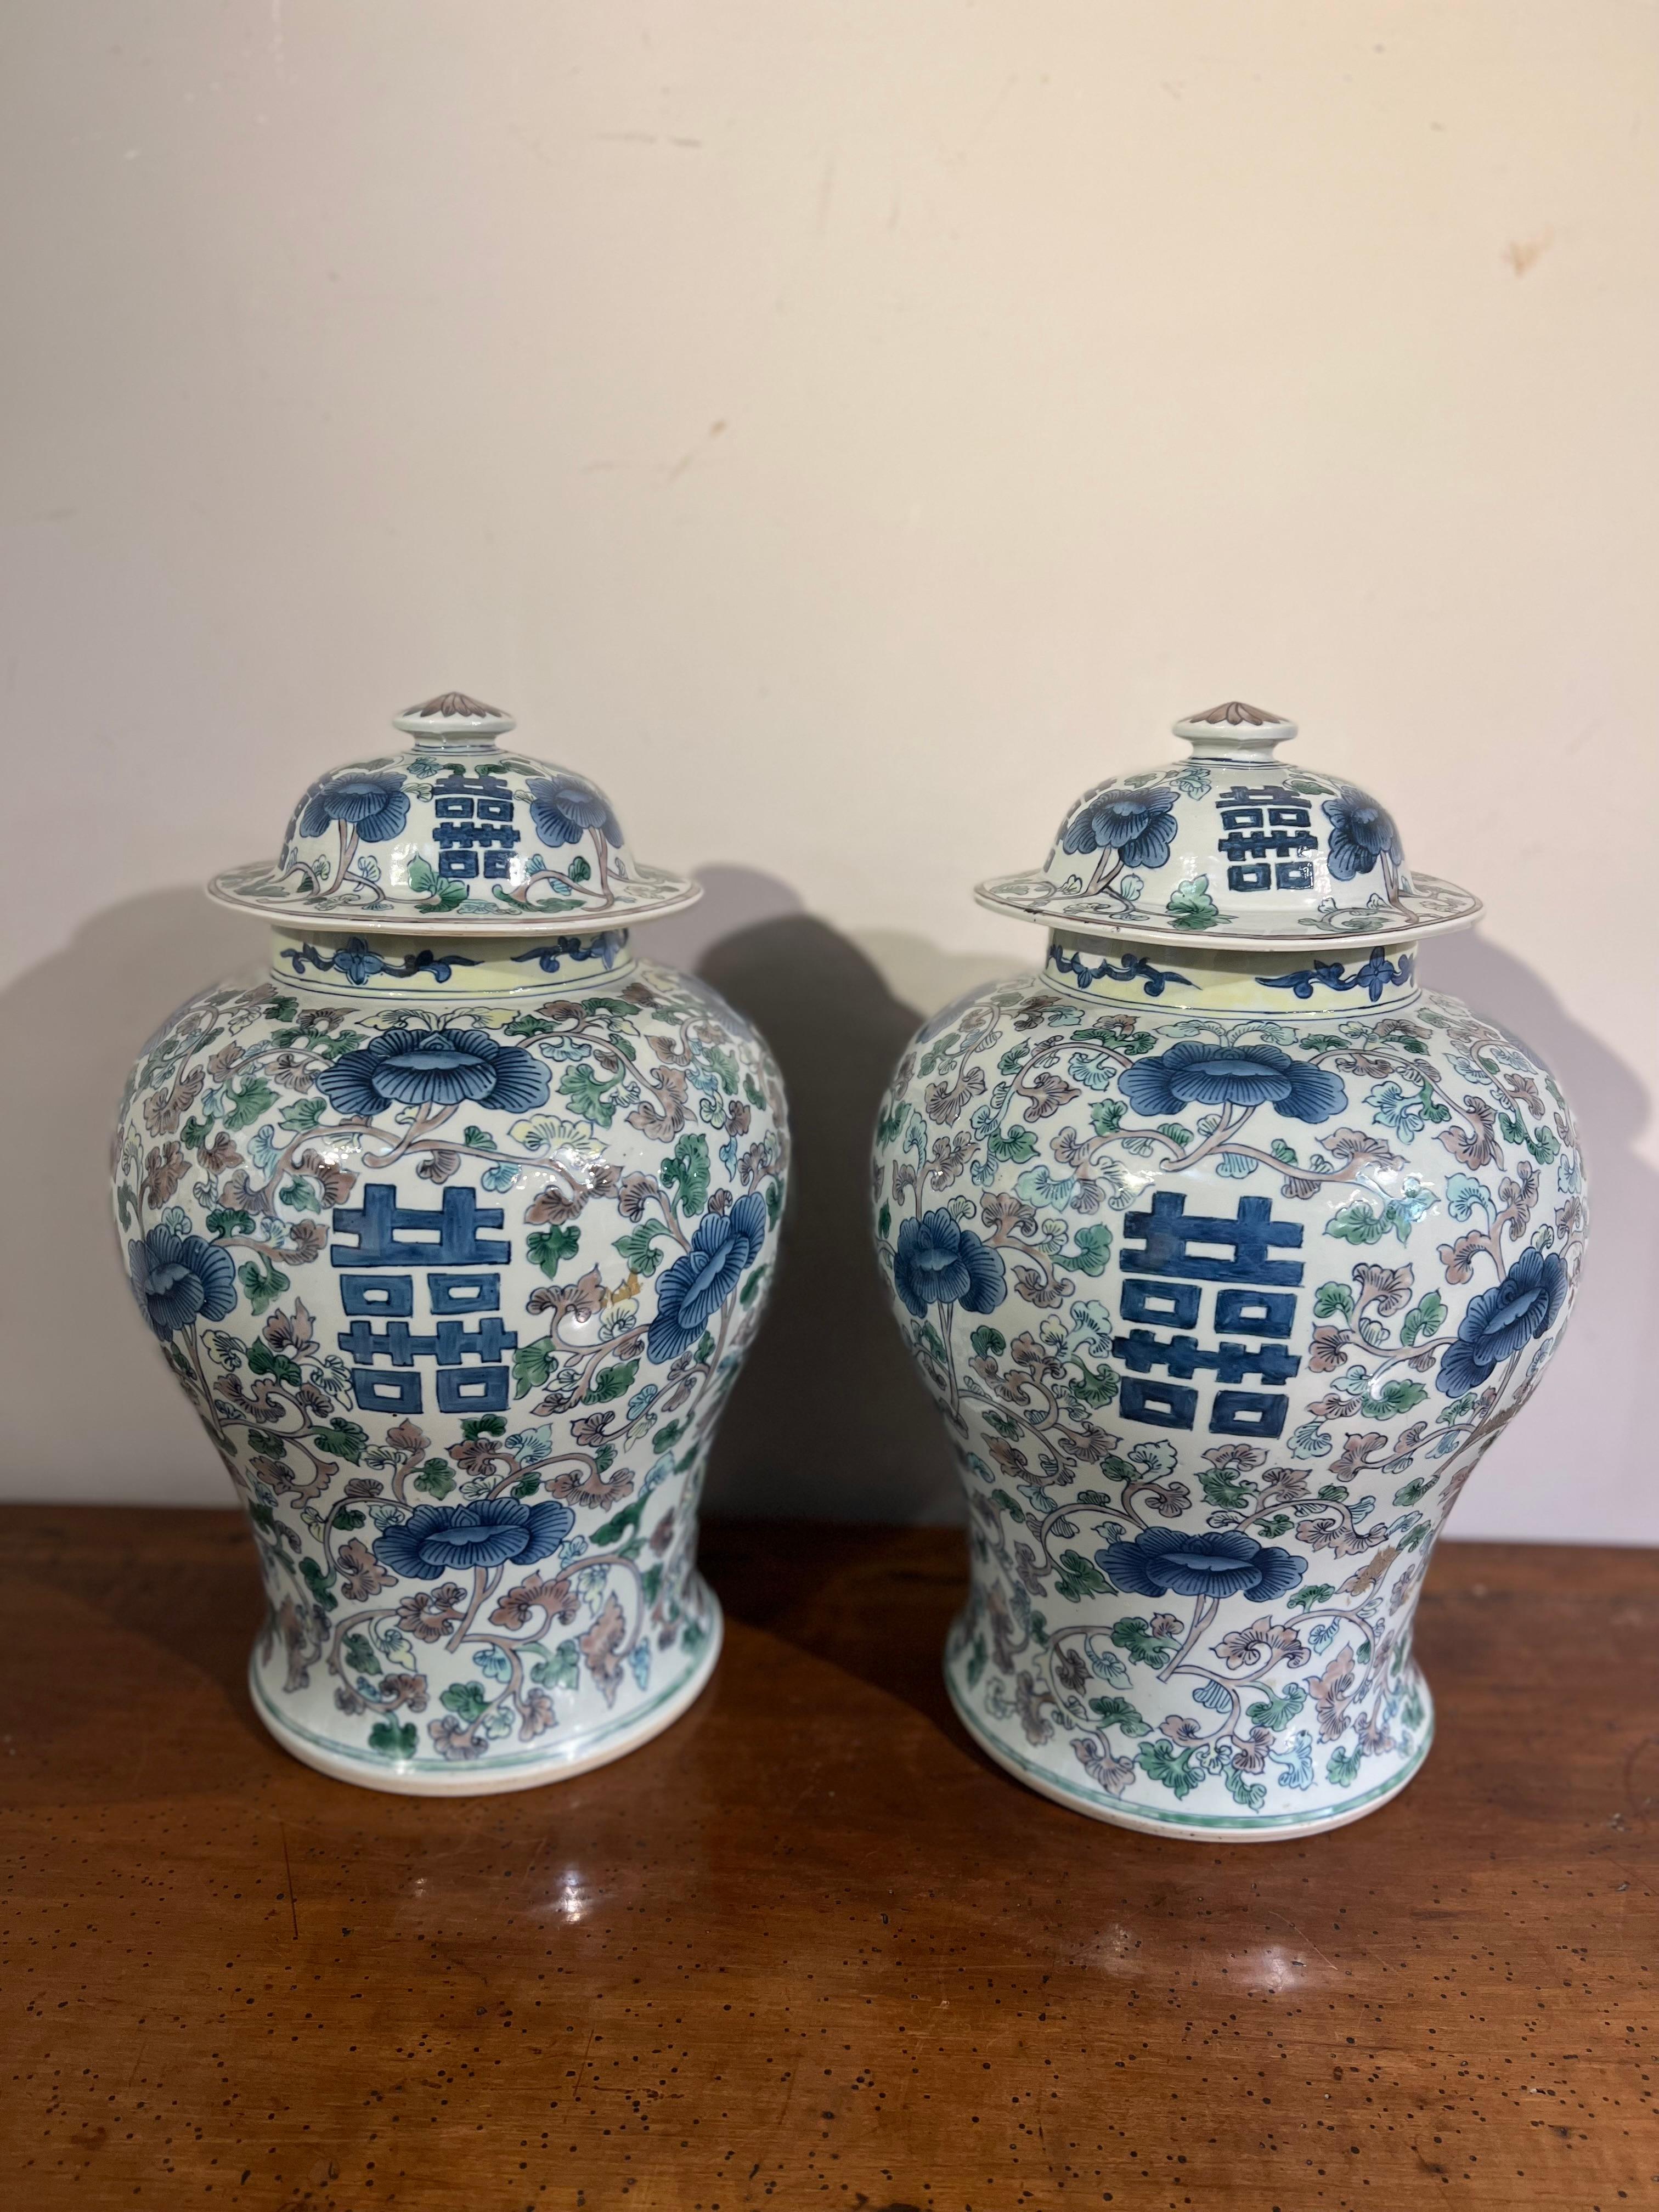 Schönes Paar Porzellantöpfchen, bemalt mit floralen Motiven in hellblauen, blauen, grünen und rosafarbenen Farbtönen, chinesische Herstellung aus den frühen 1900er Jahren.

MASSNAHMEN: H 43 cm, Breite 29 cm.